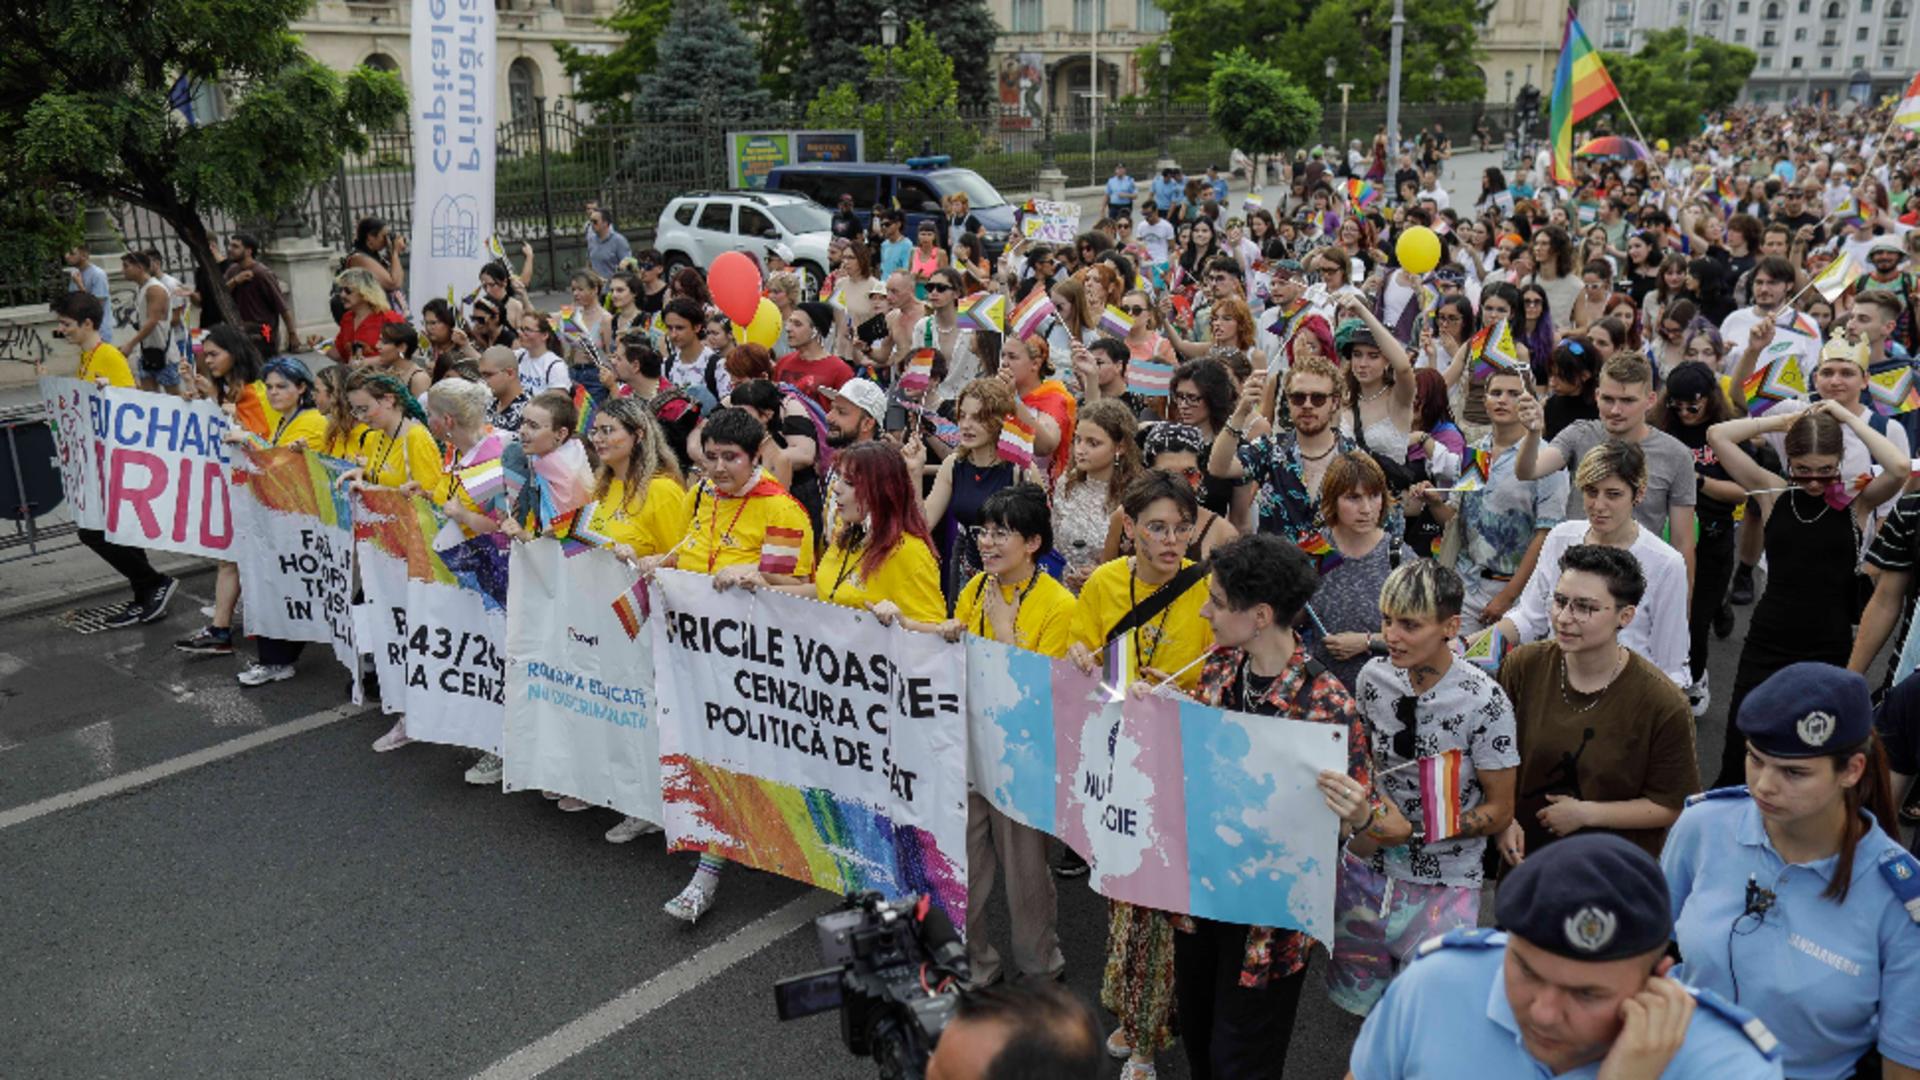 S-a descoperit cine a provocat incidente la parada gay din Capitală – Mesajele neo-marxiștilor infiltrați la marșul minorităților sexuale